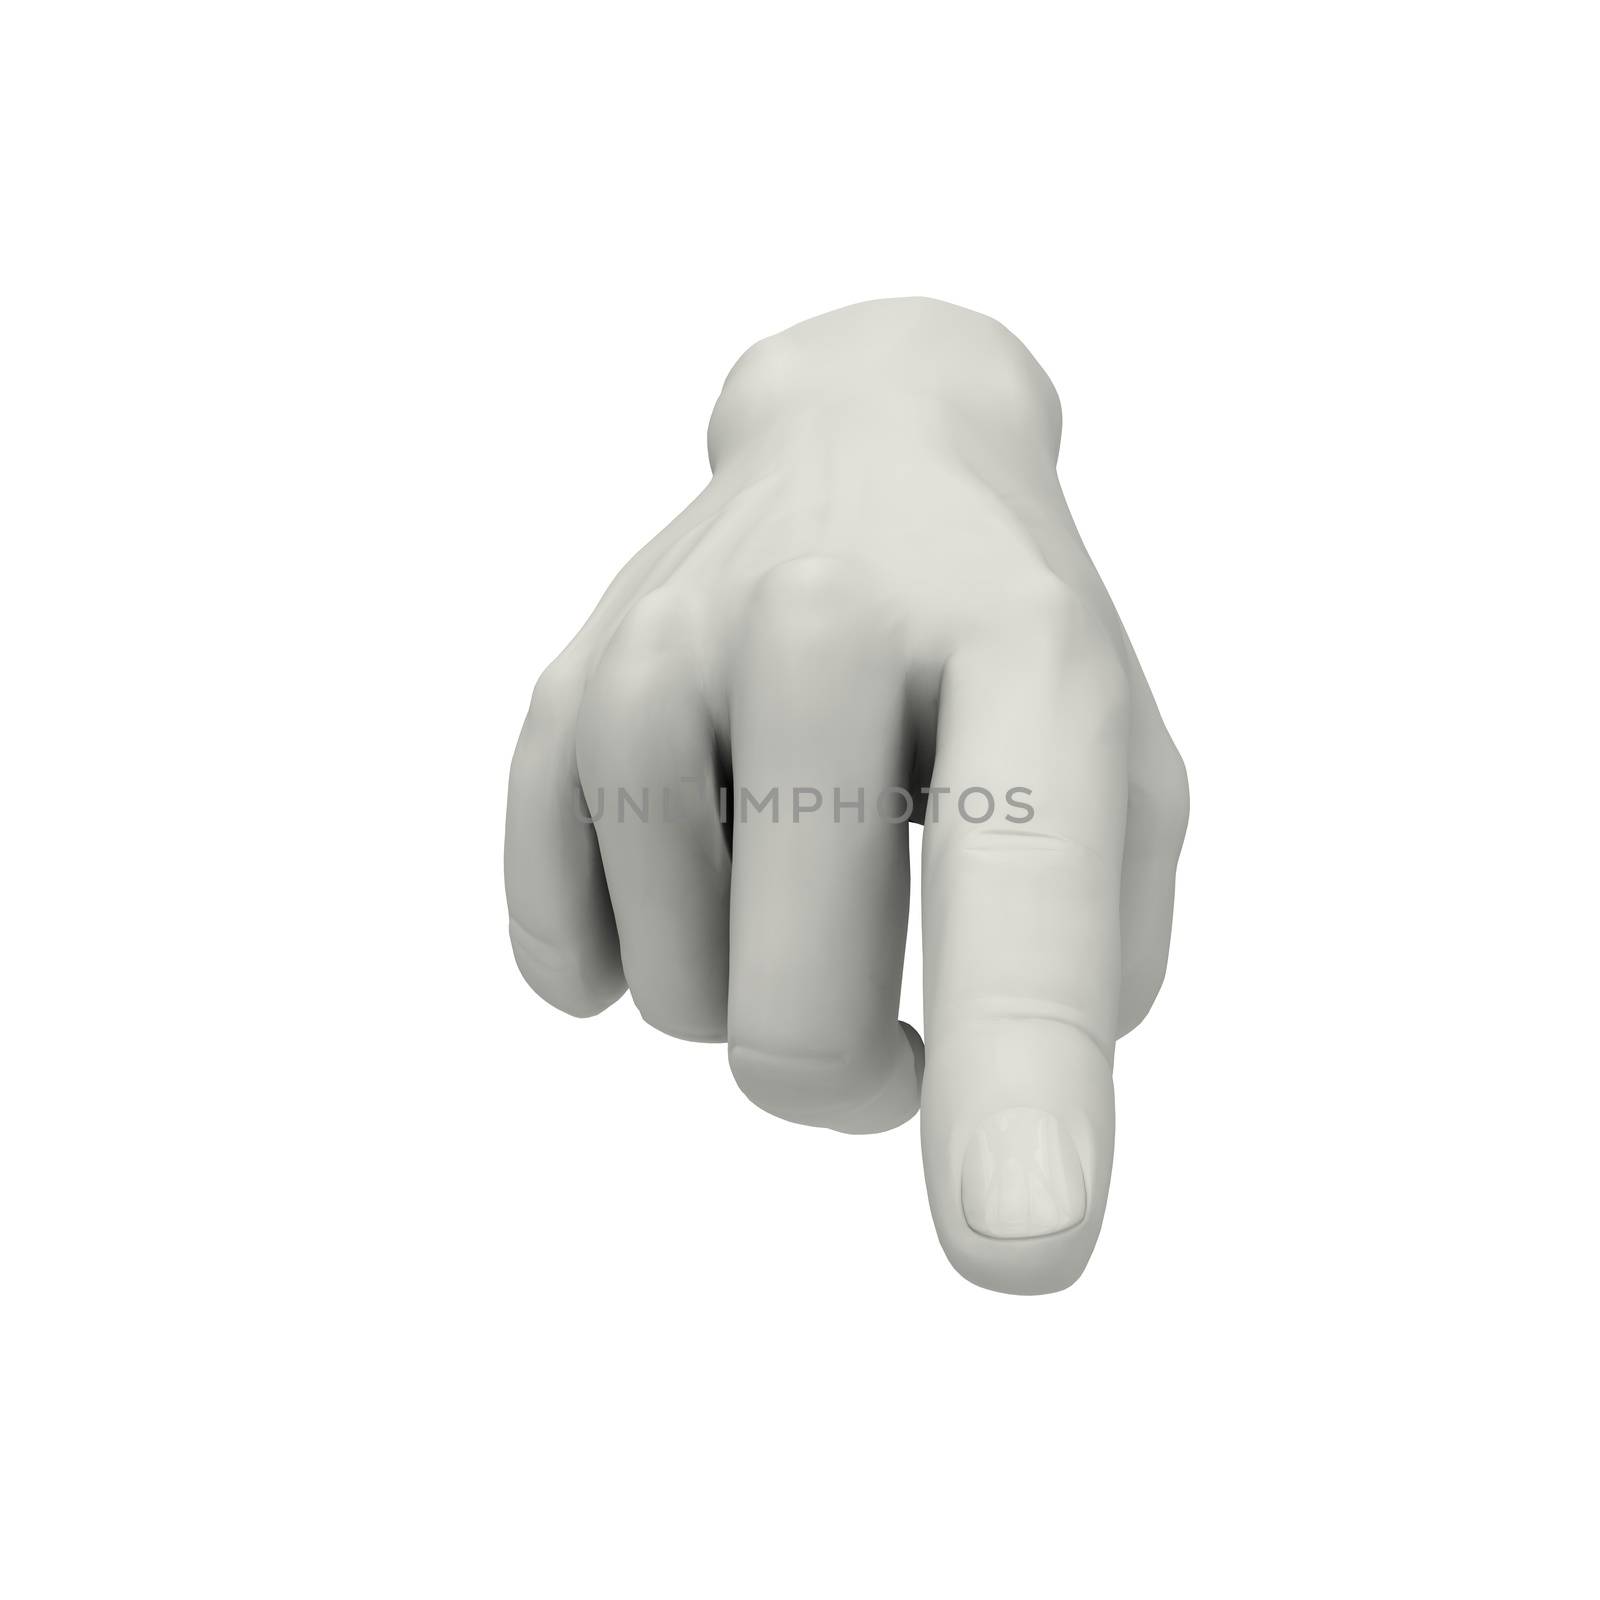 Hand sign 1 by 3DAgentur